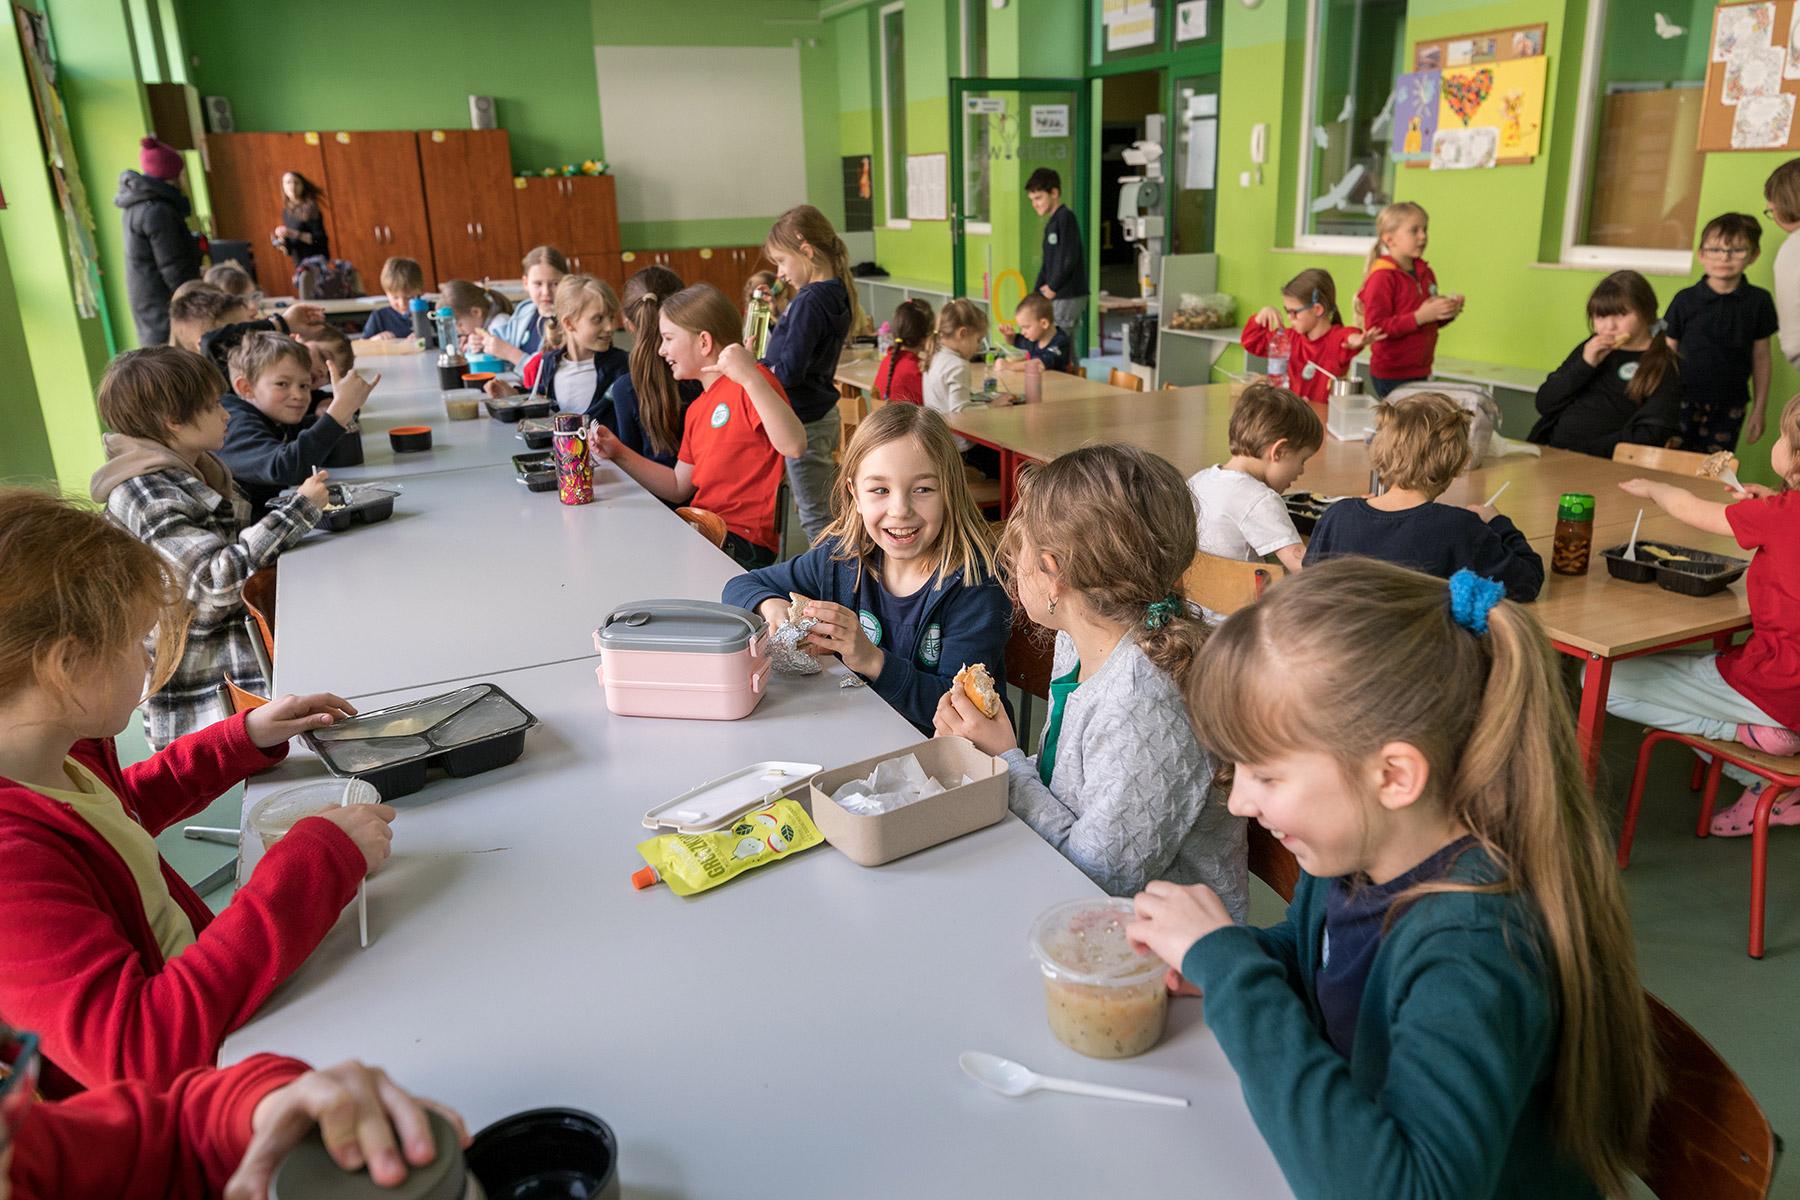 Los niños comparten una comida durante el recreo. Fotografía: FLM/ Albin Hillert